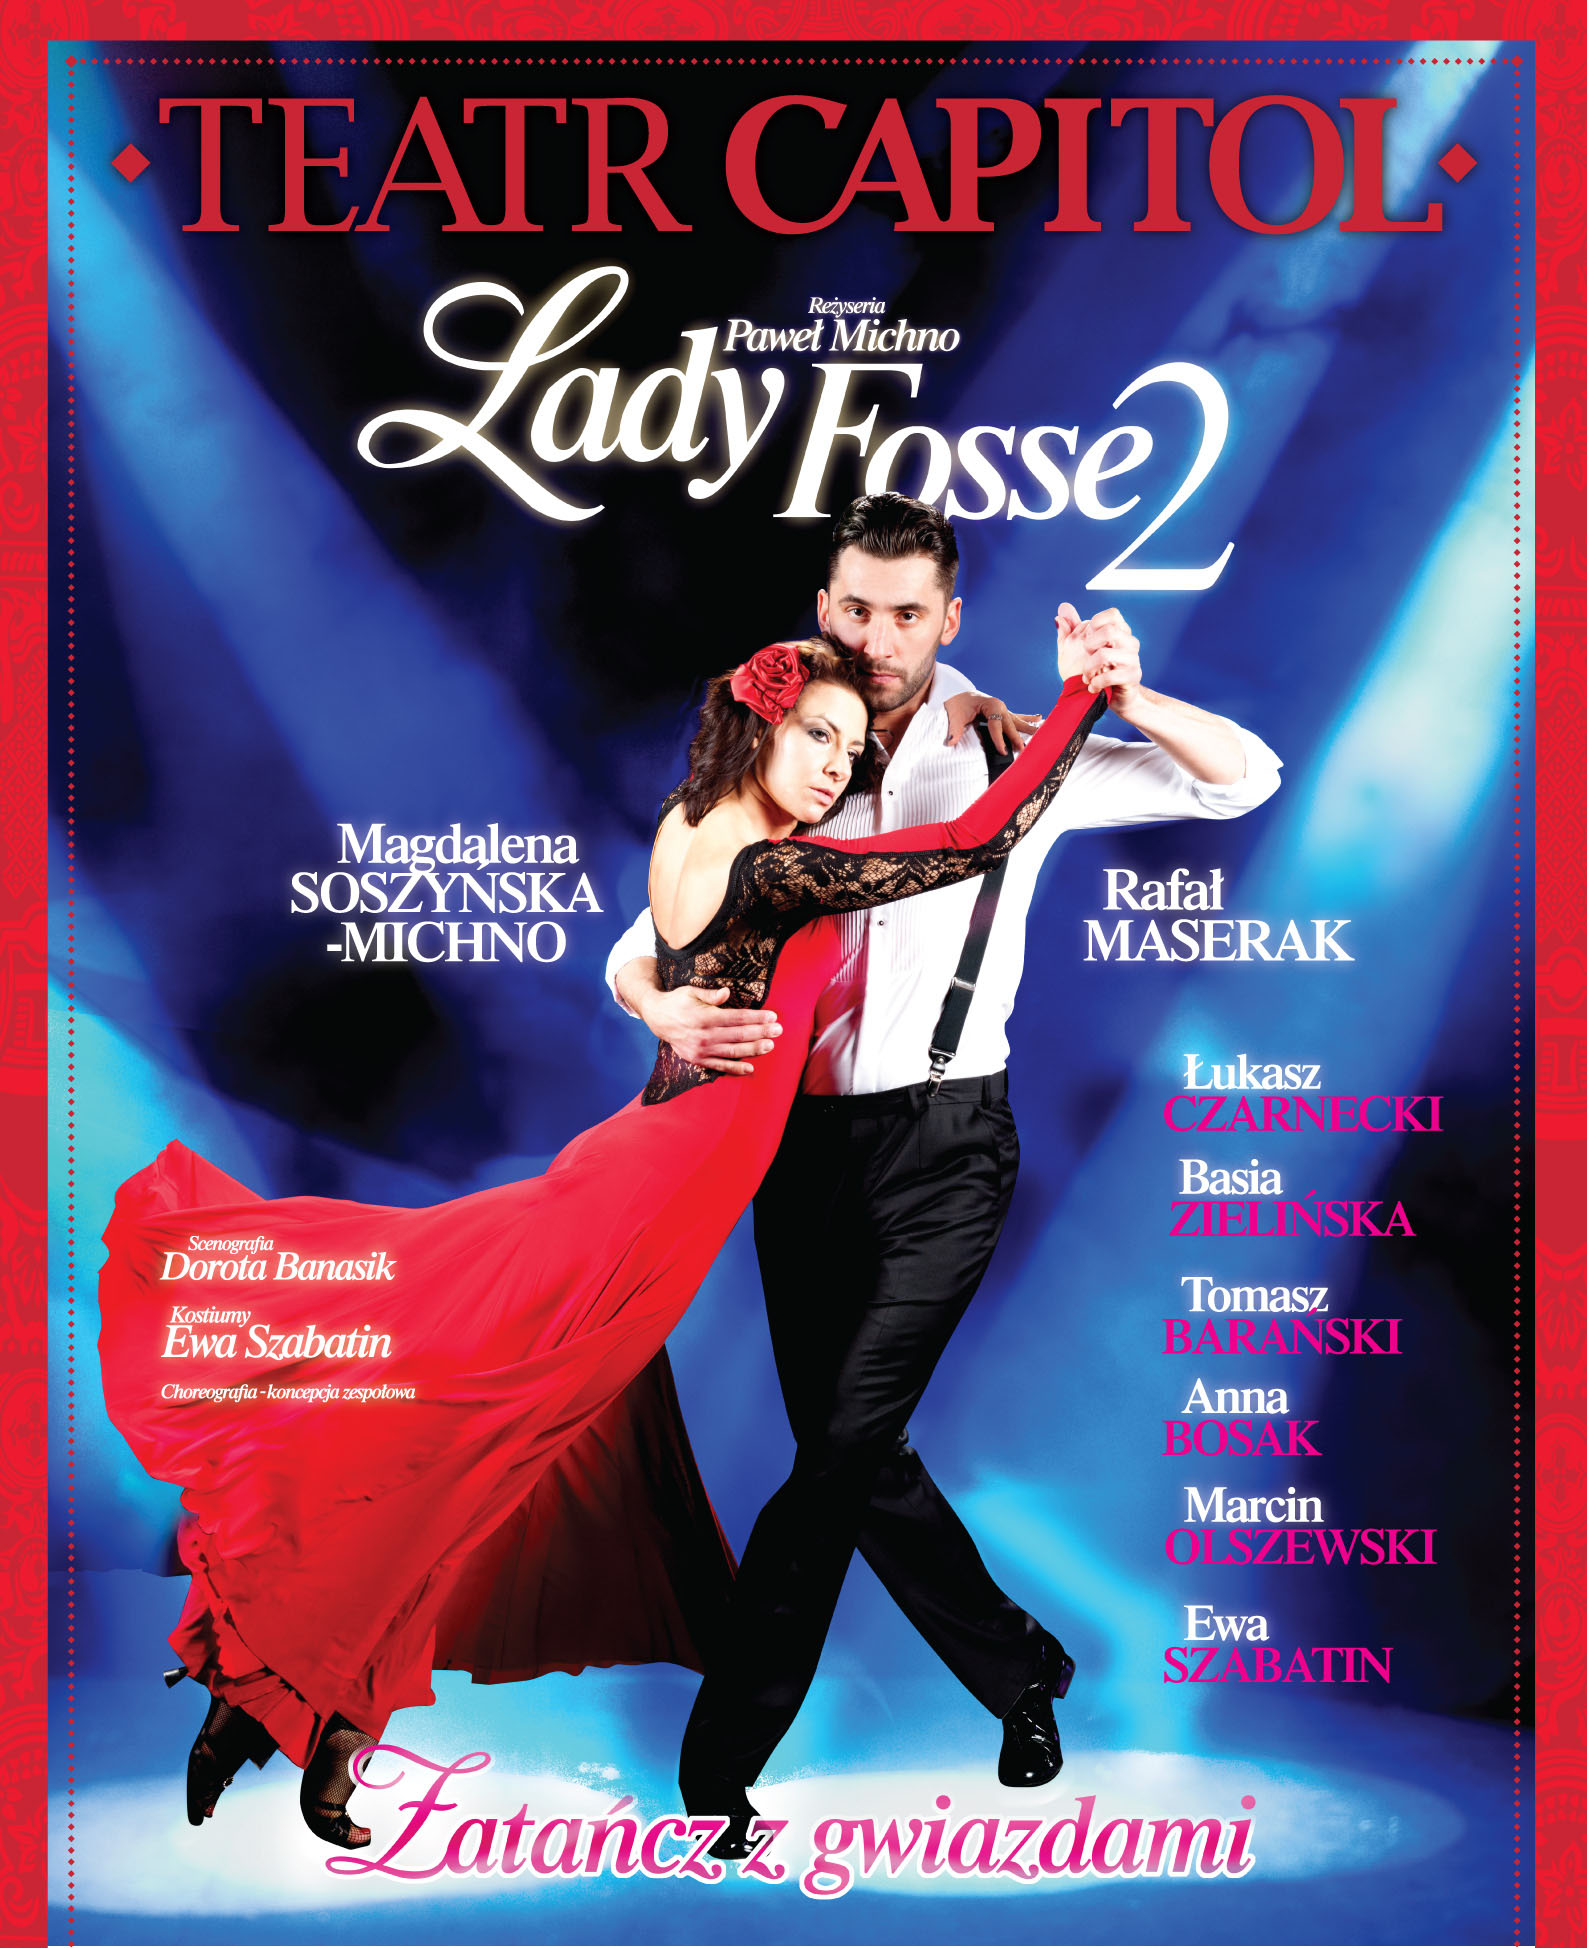 Lady Fosse 2 w Teatrze Capitol - plakat (źródło: materiał prasowy Teatru Capitol)